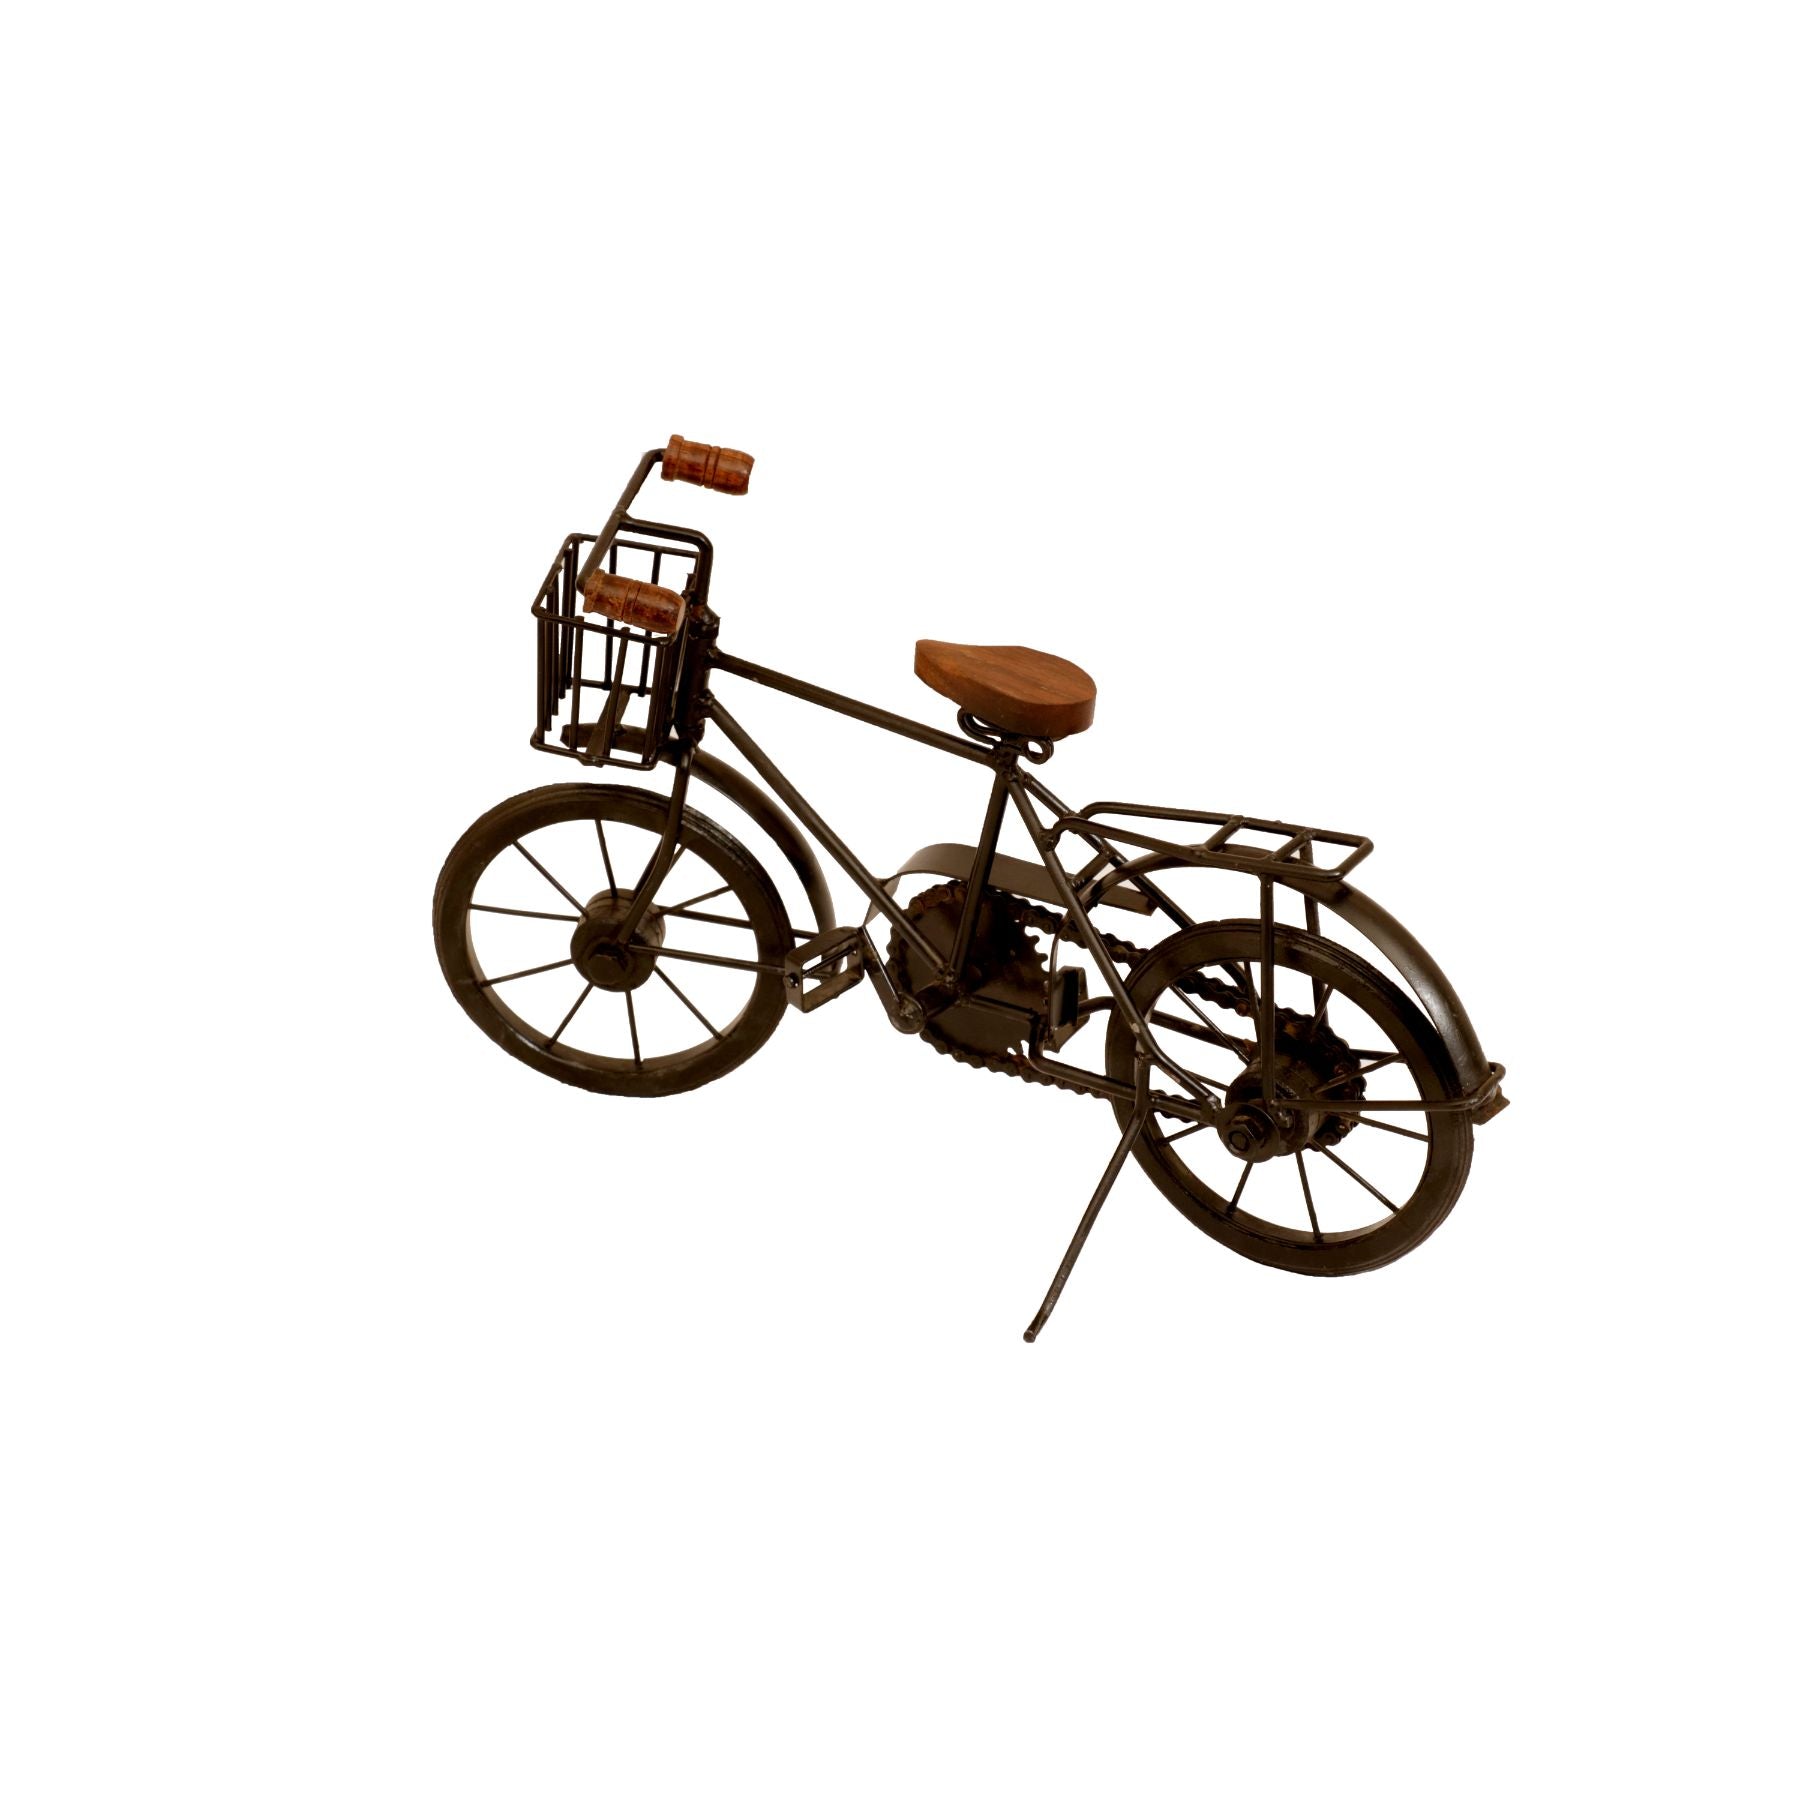 Iron and Wood Basket Bicycle Vehicle figurine